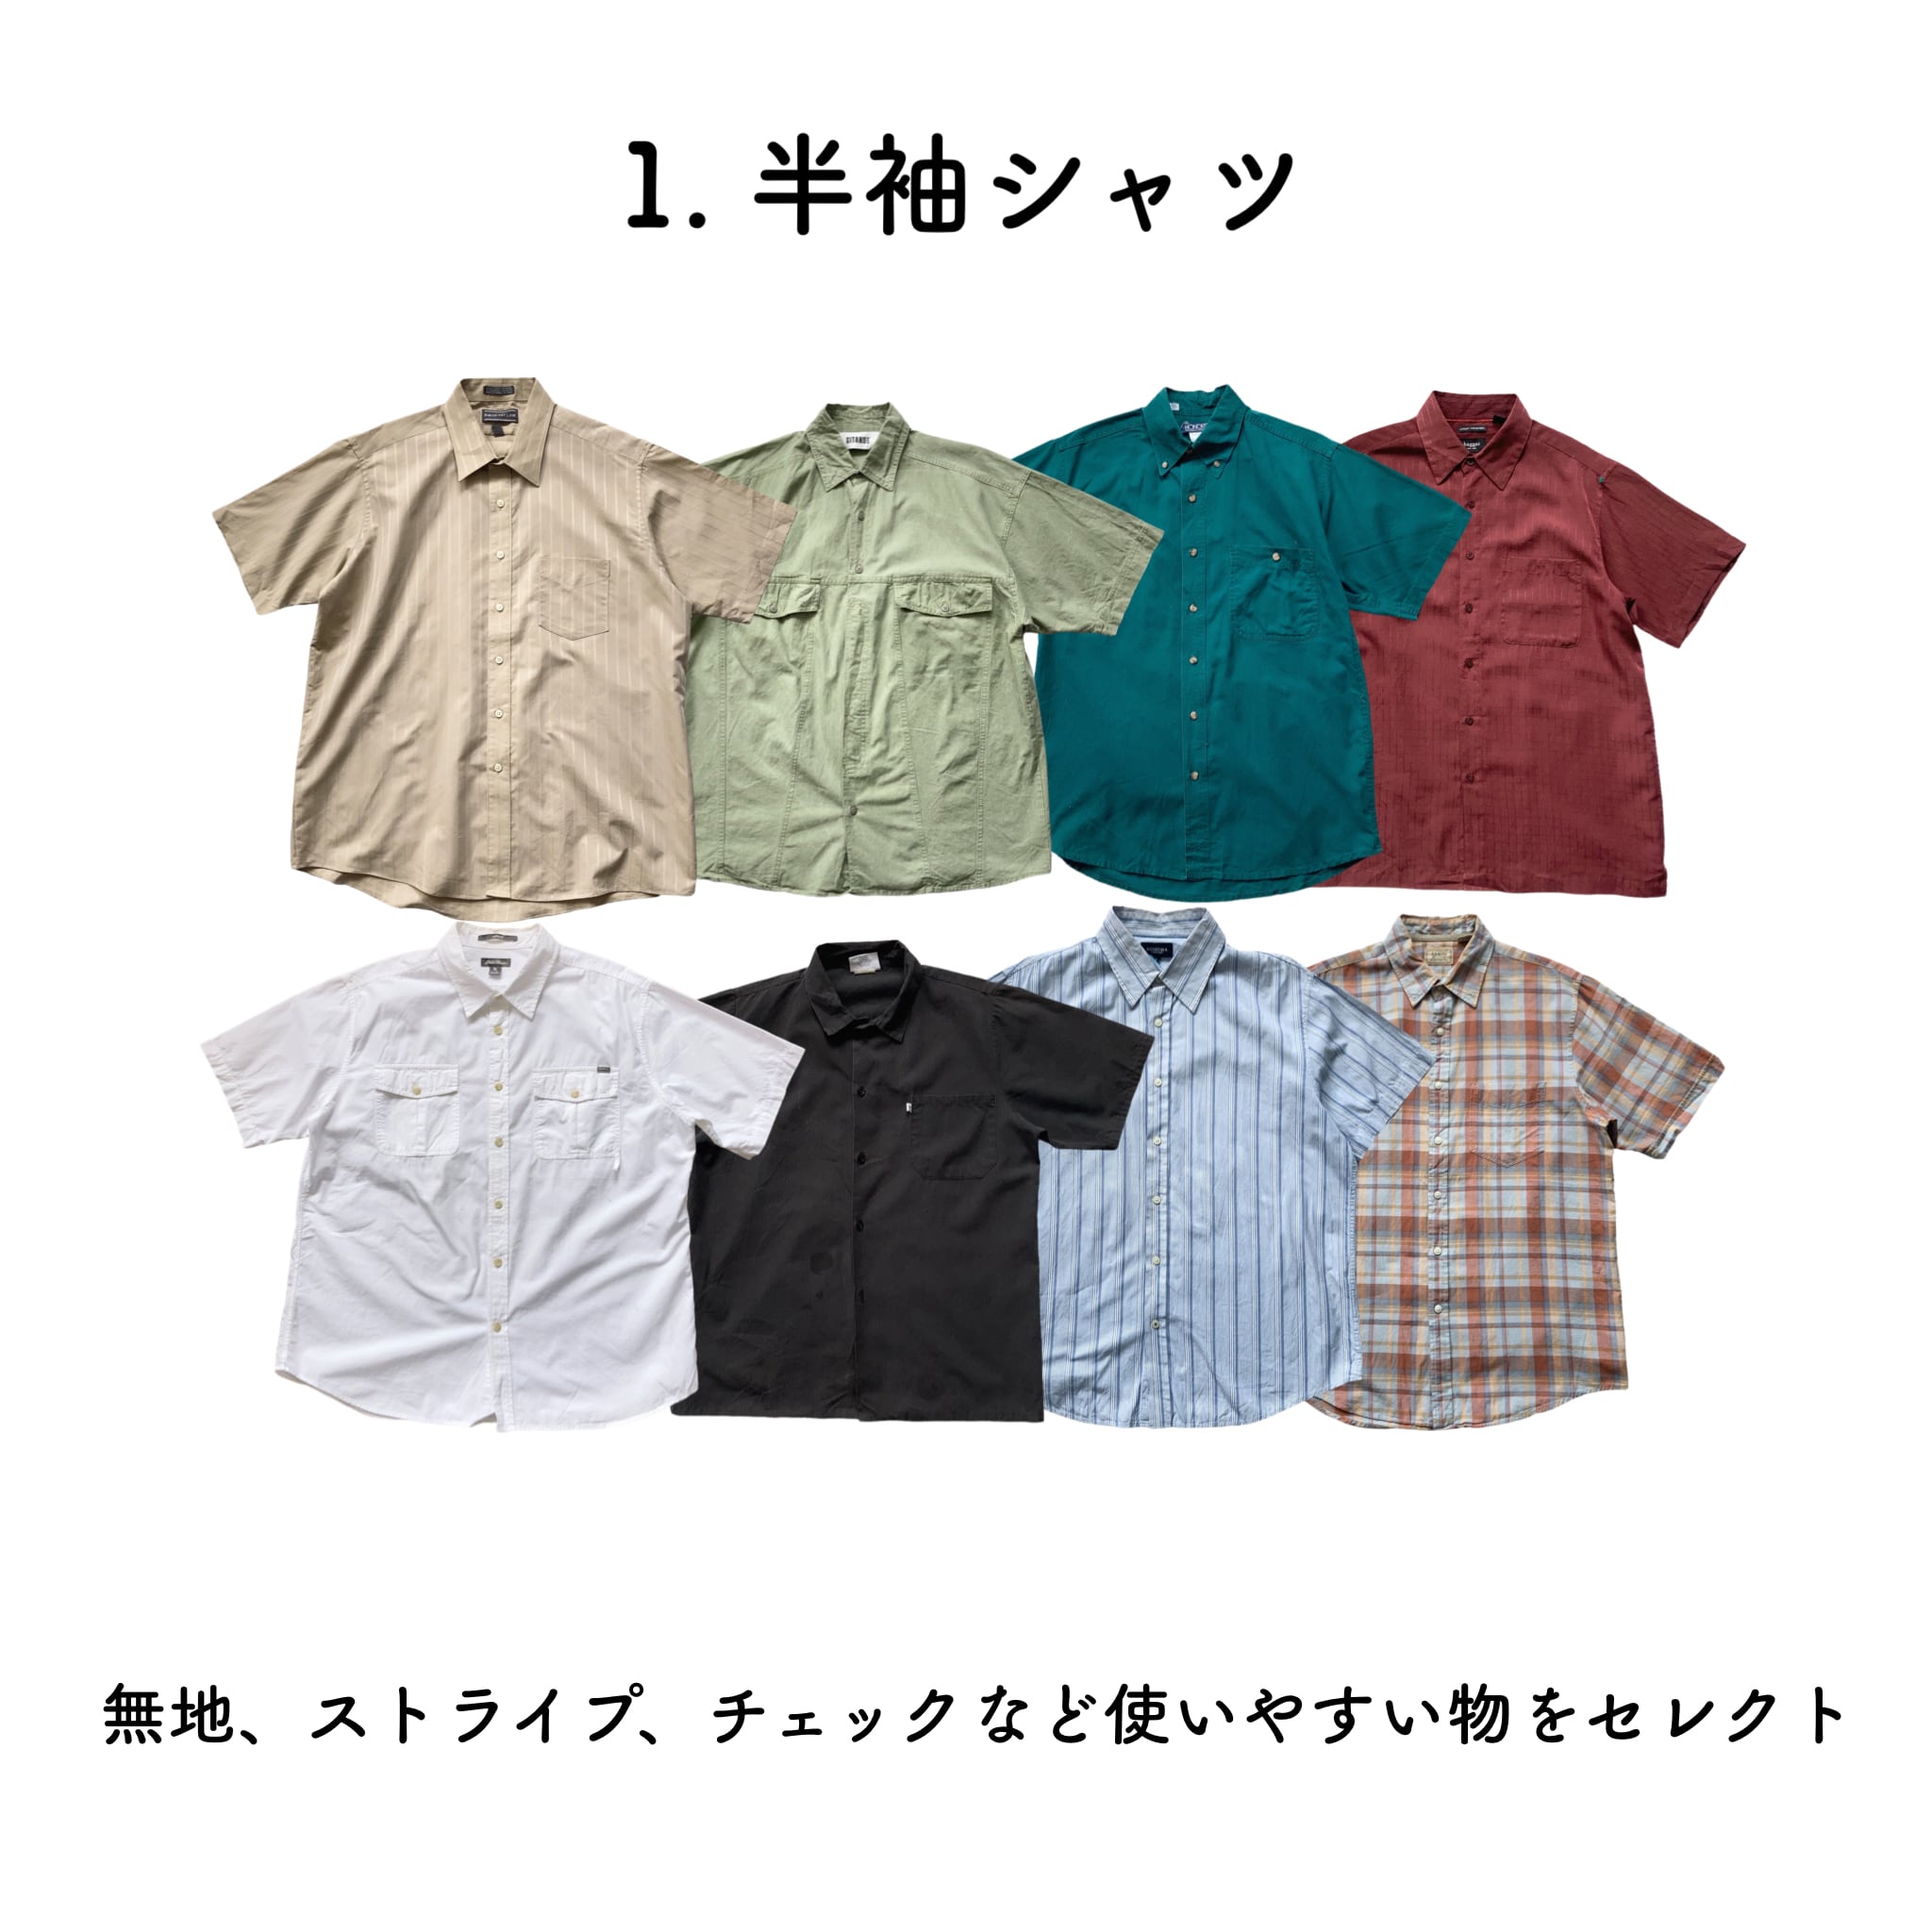 【夏Ver.】ネクタイスタイルCOMBO‼︎ 半袖シャツ × ネクタイ × ボトムスの3点セット